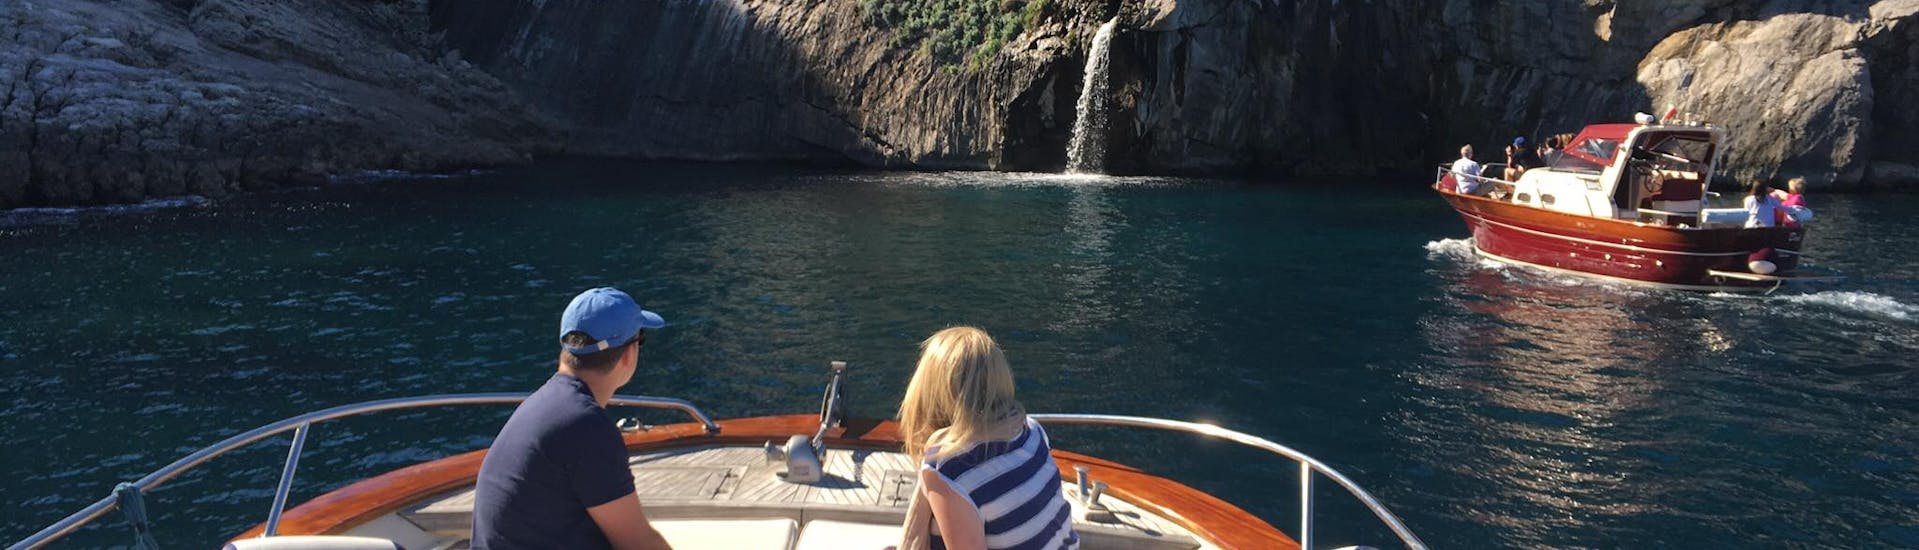 Bootstour von Sorrent nach Capri inkl. Blaue Grotte mit Schwimm- und Schnorchelstopps.